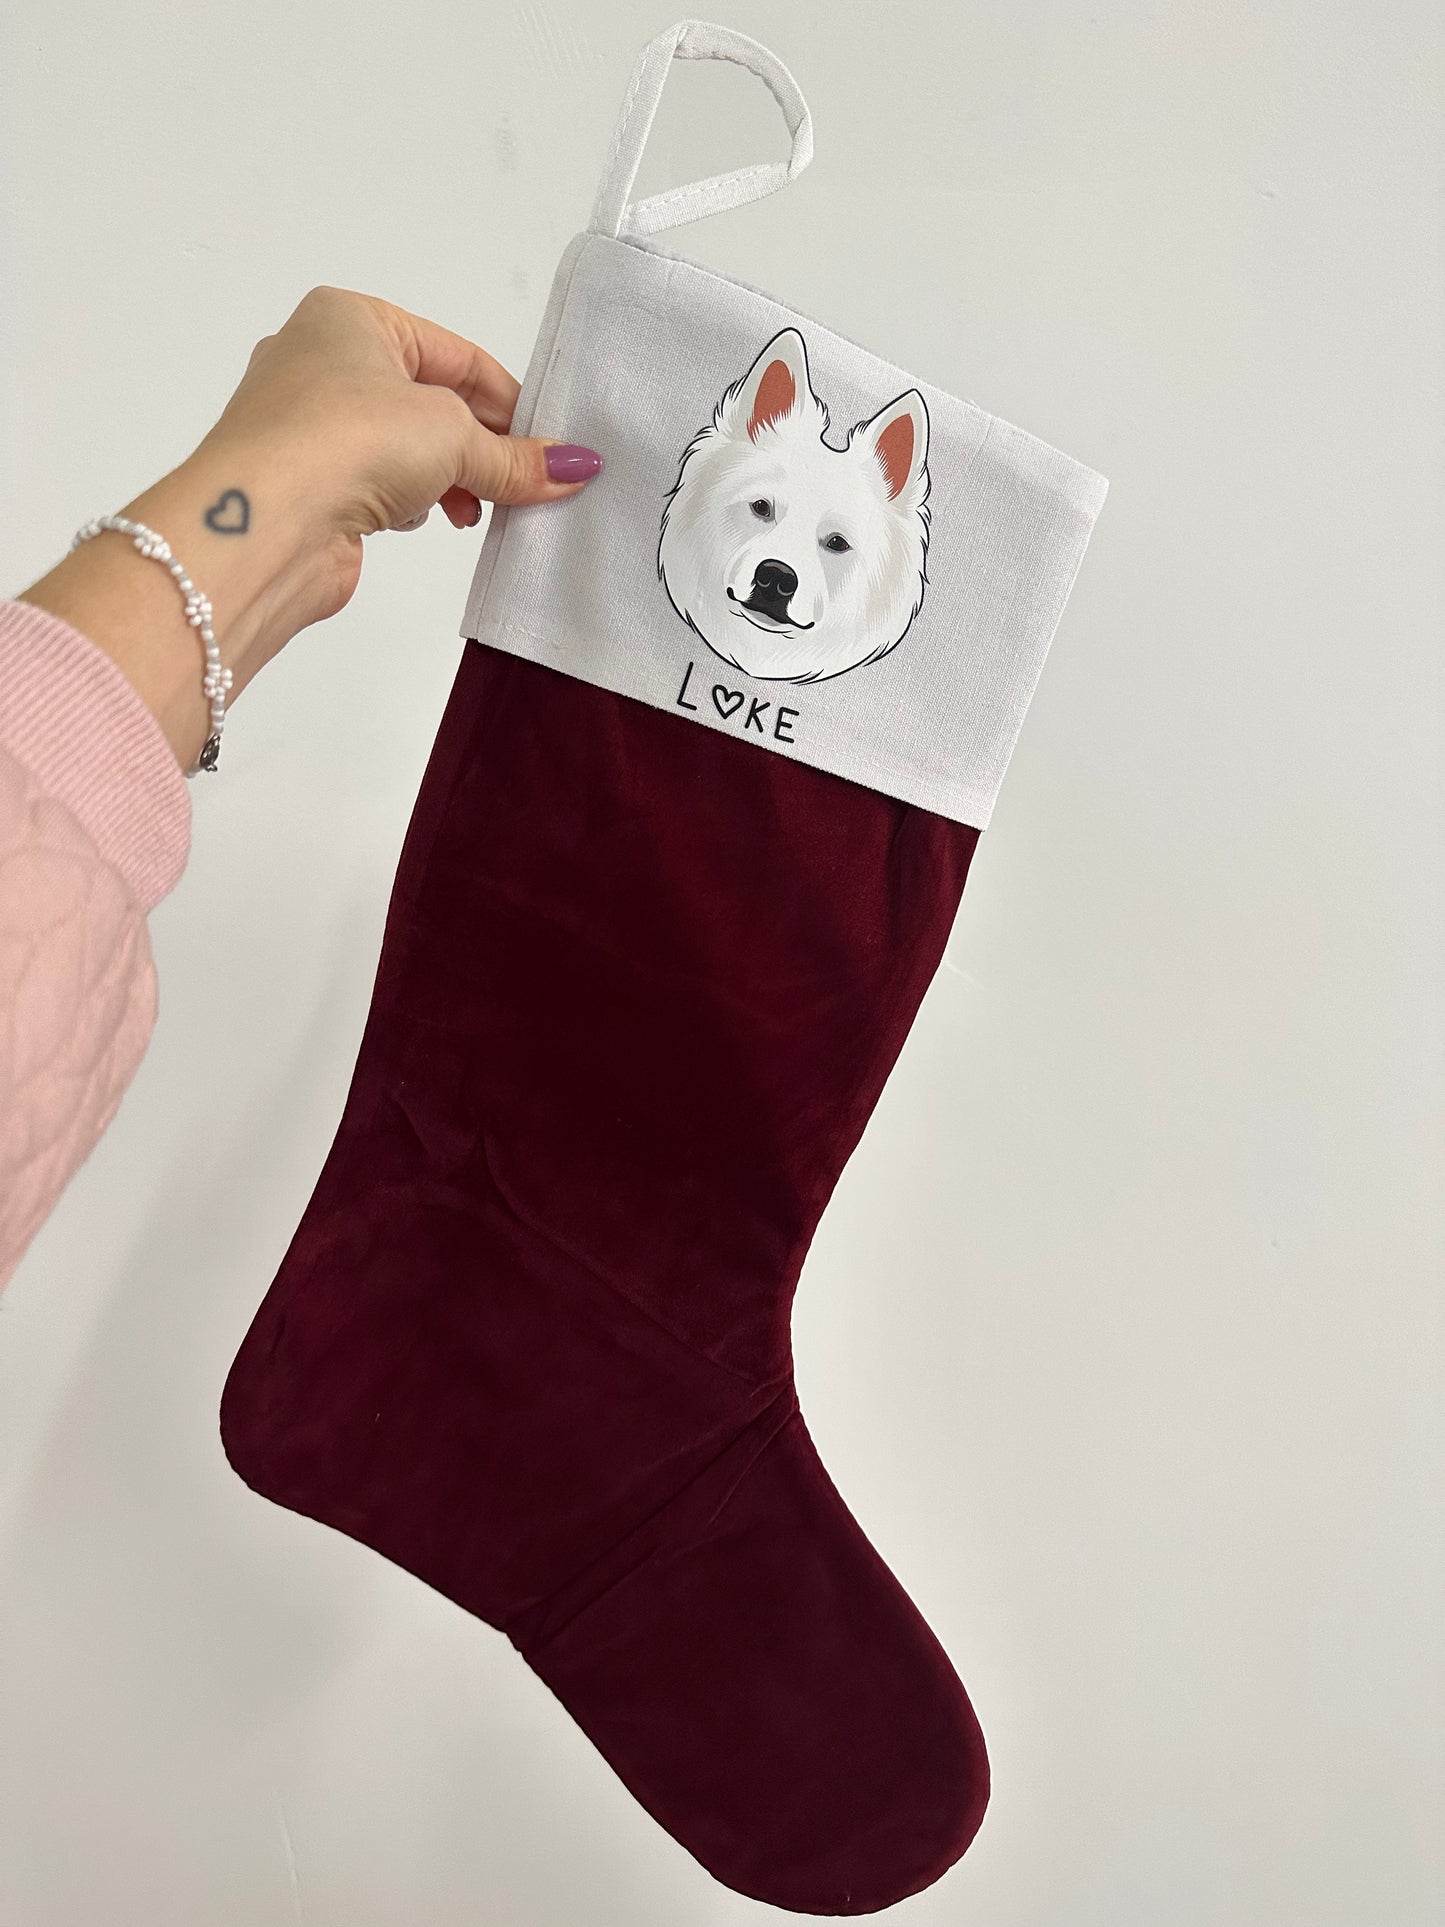 Din hund på julesok - Farveportræt